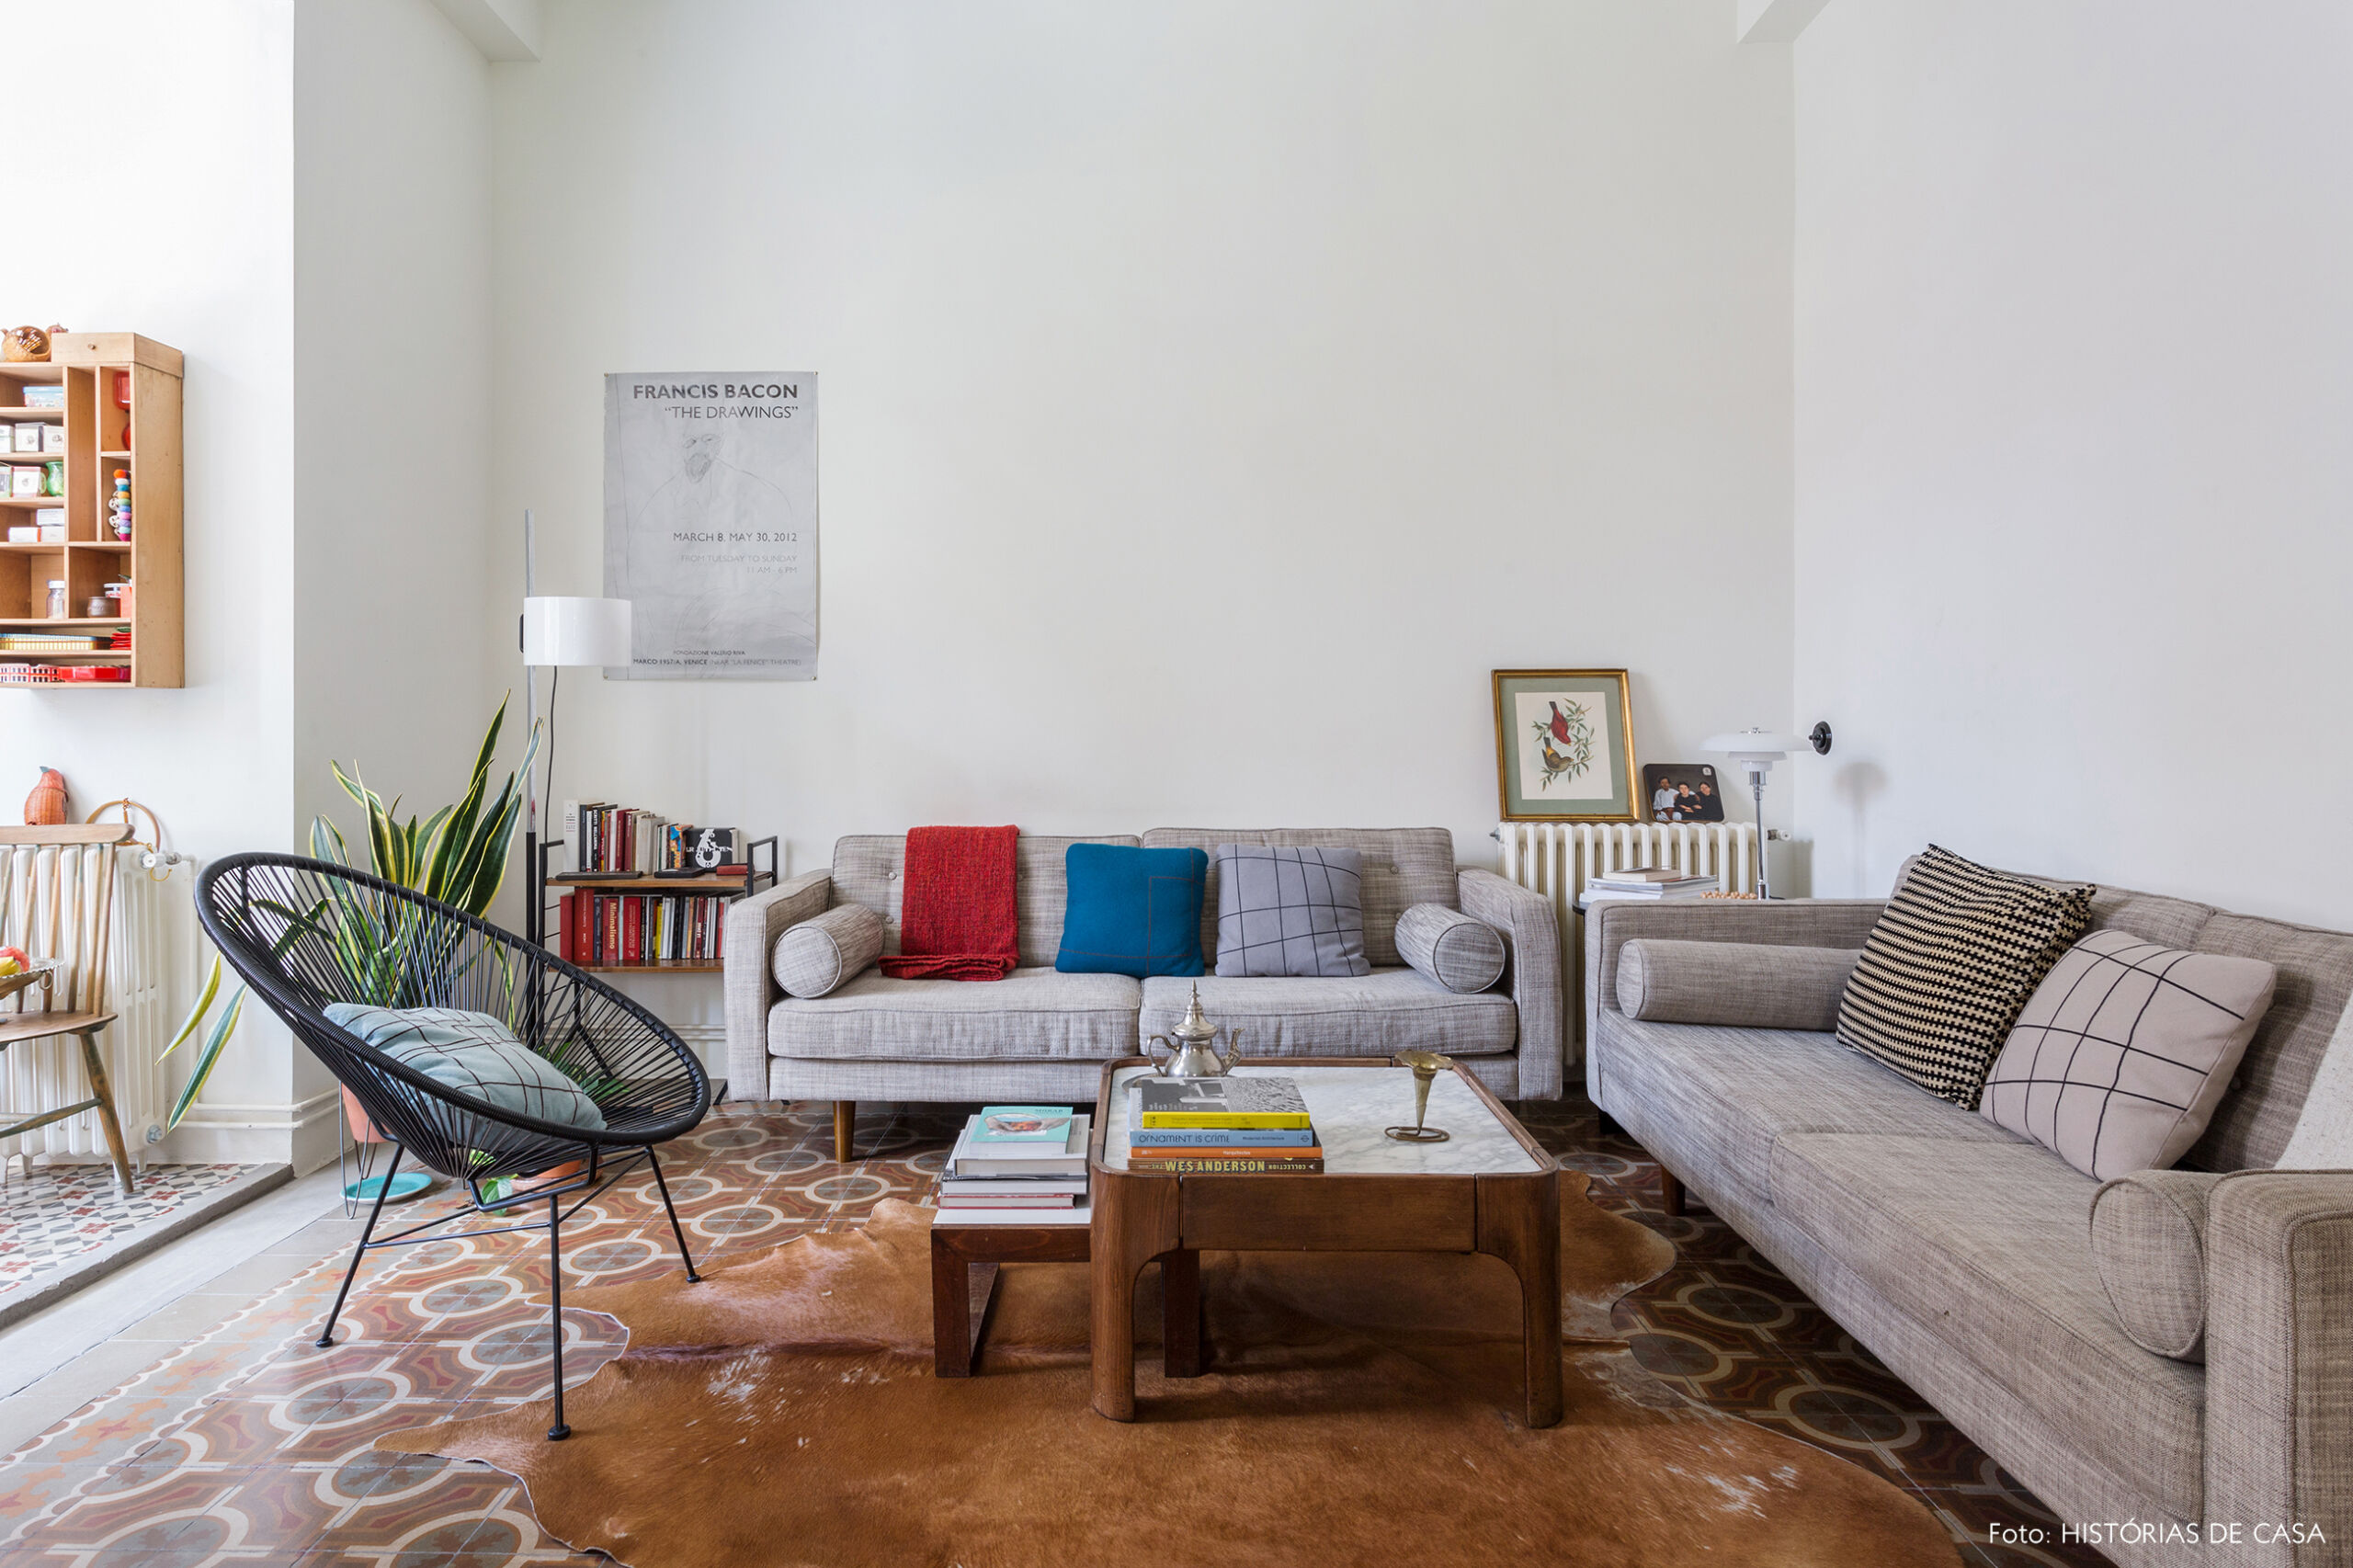 Apartamento em Barcelona com piso de ladrilhos na sala